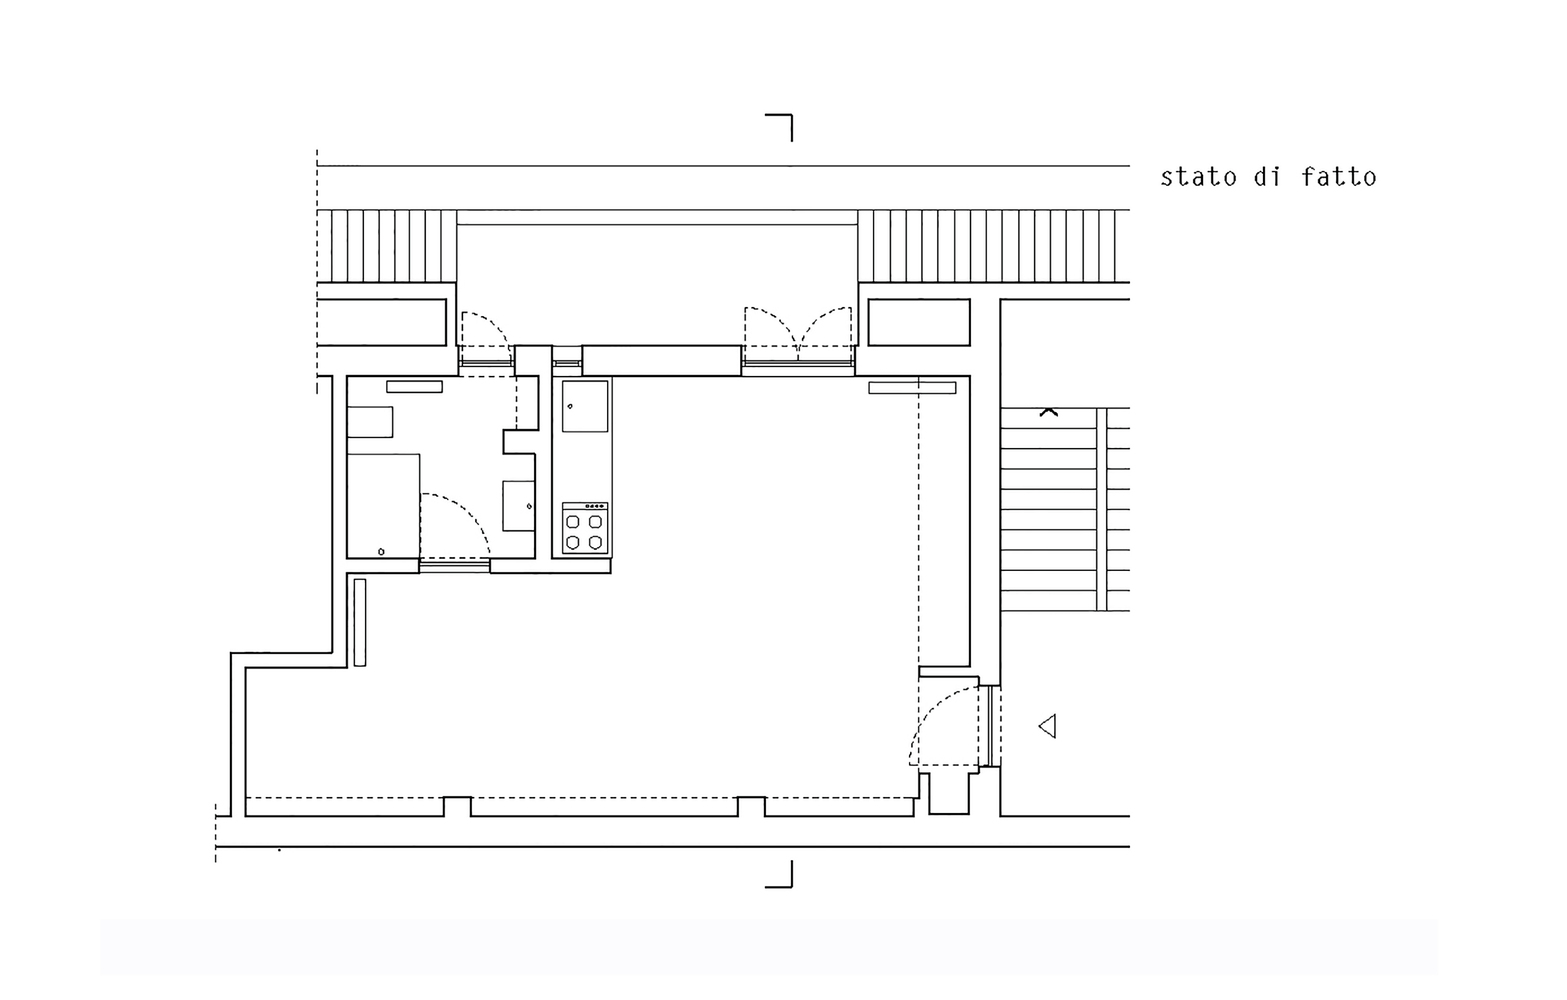 Hình ảnh sơ đồ thiết kế mặt bằng căn hộ 28m2.